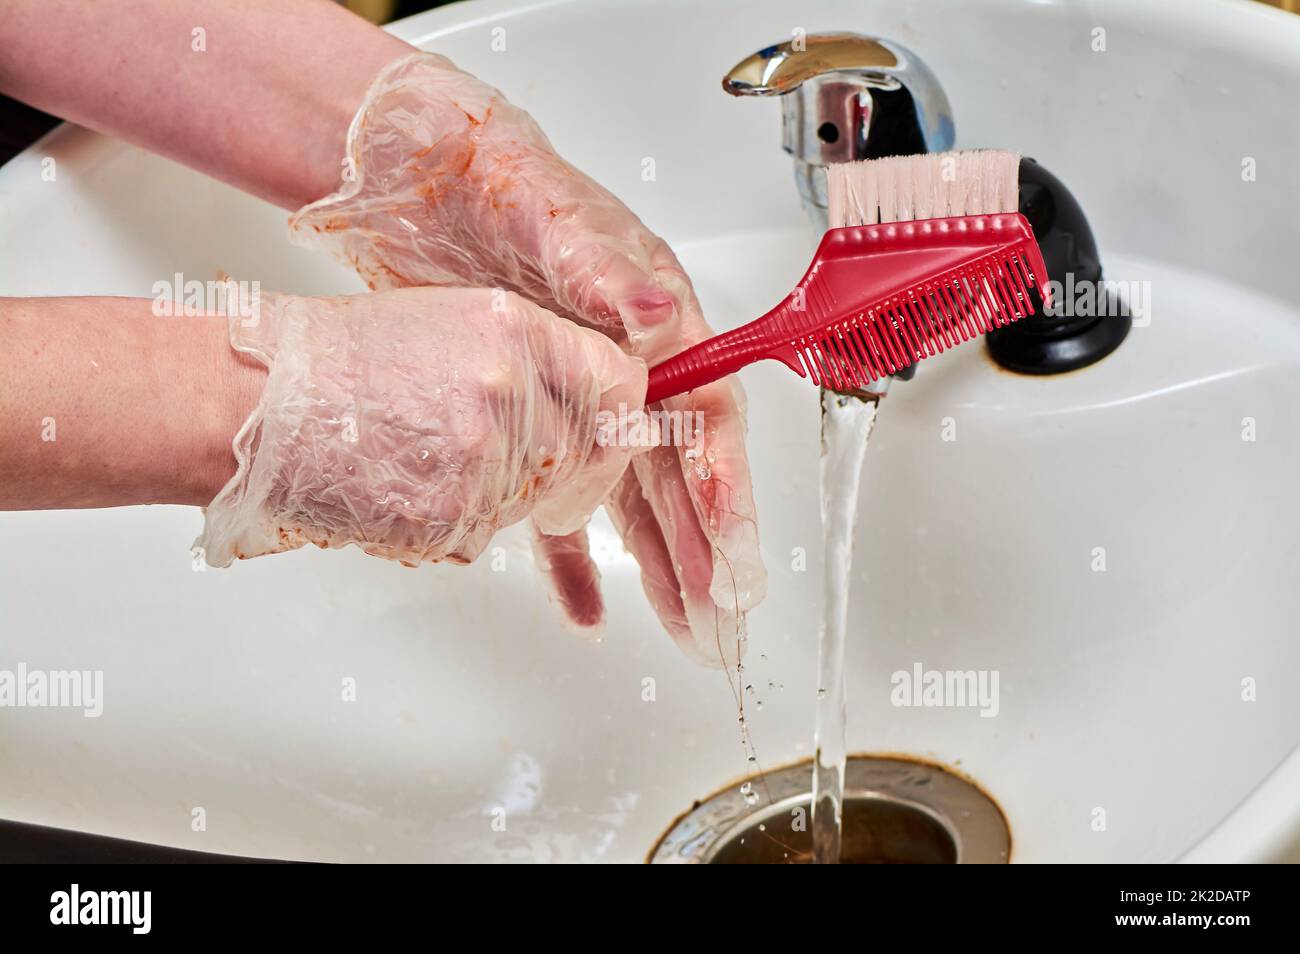 Frauenhände in Haarfärbehandschuhen waschen einen Kamm unter einem Wasserstrahl in einem weißen Waschbecken Stockfoto